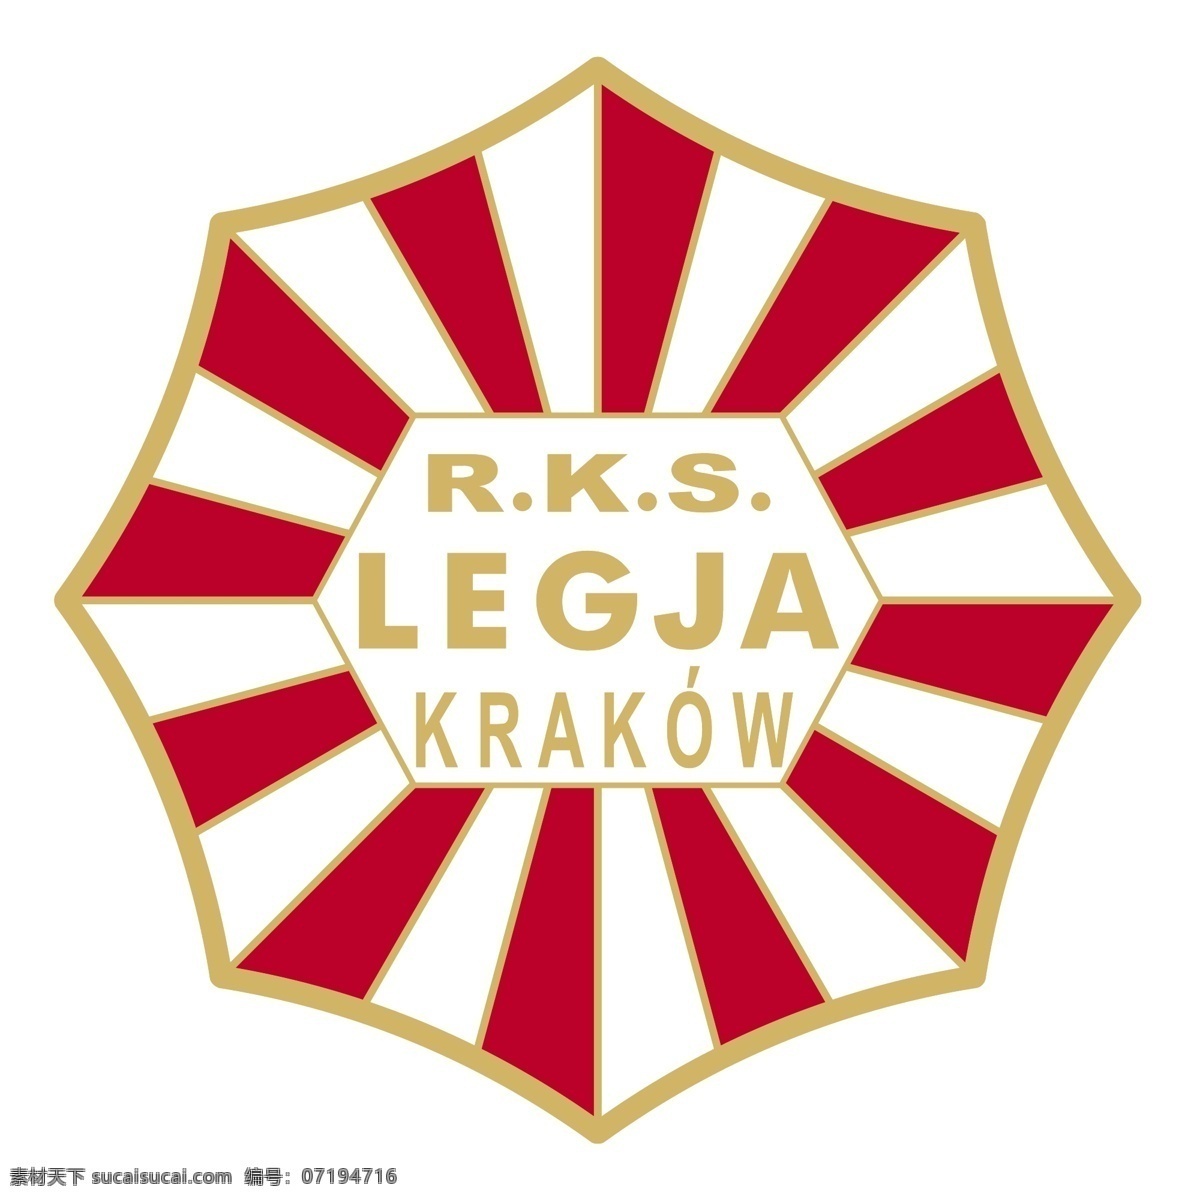 克拉科夫 市 legja 家具设计 rks 矢量 进行标识 标识进行矢量 矢量rks 标志rks 标志中 eps中 维斯瓦 矢量图 建筑家居